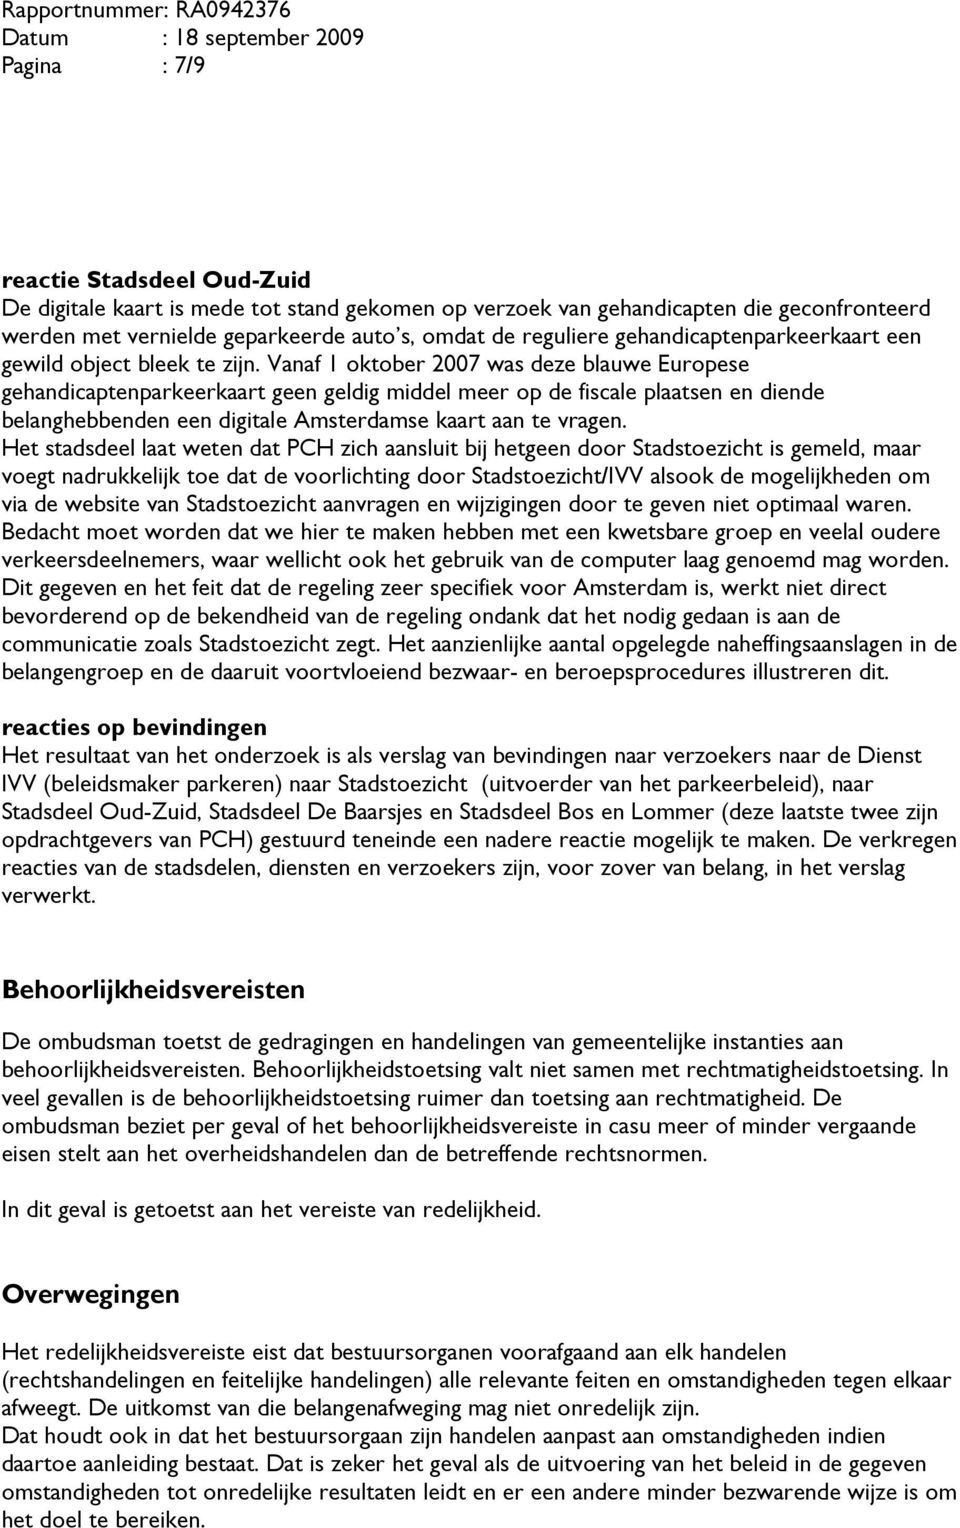 Vanaf 1 oktober 2007 was deze blauwe Europese gehandicaptenparkeerkaart geen geldig middel meer op de fiscale plaatsen en diende belanghebbenden een digitale Amsterdamse kaart aan te vragen.